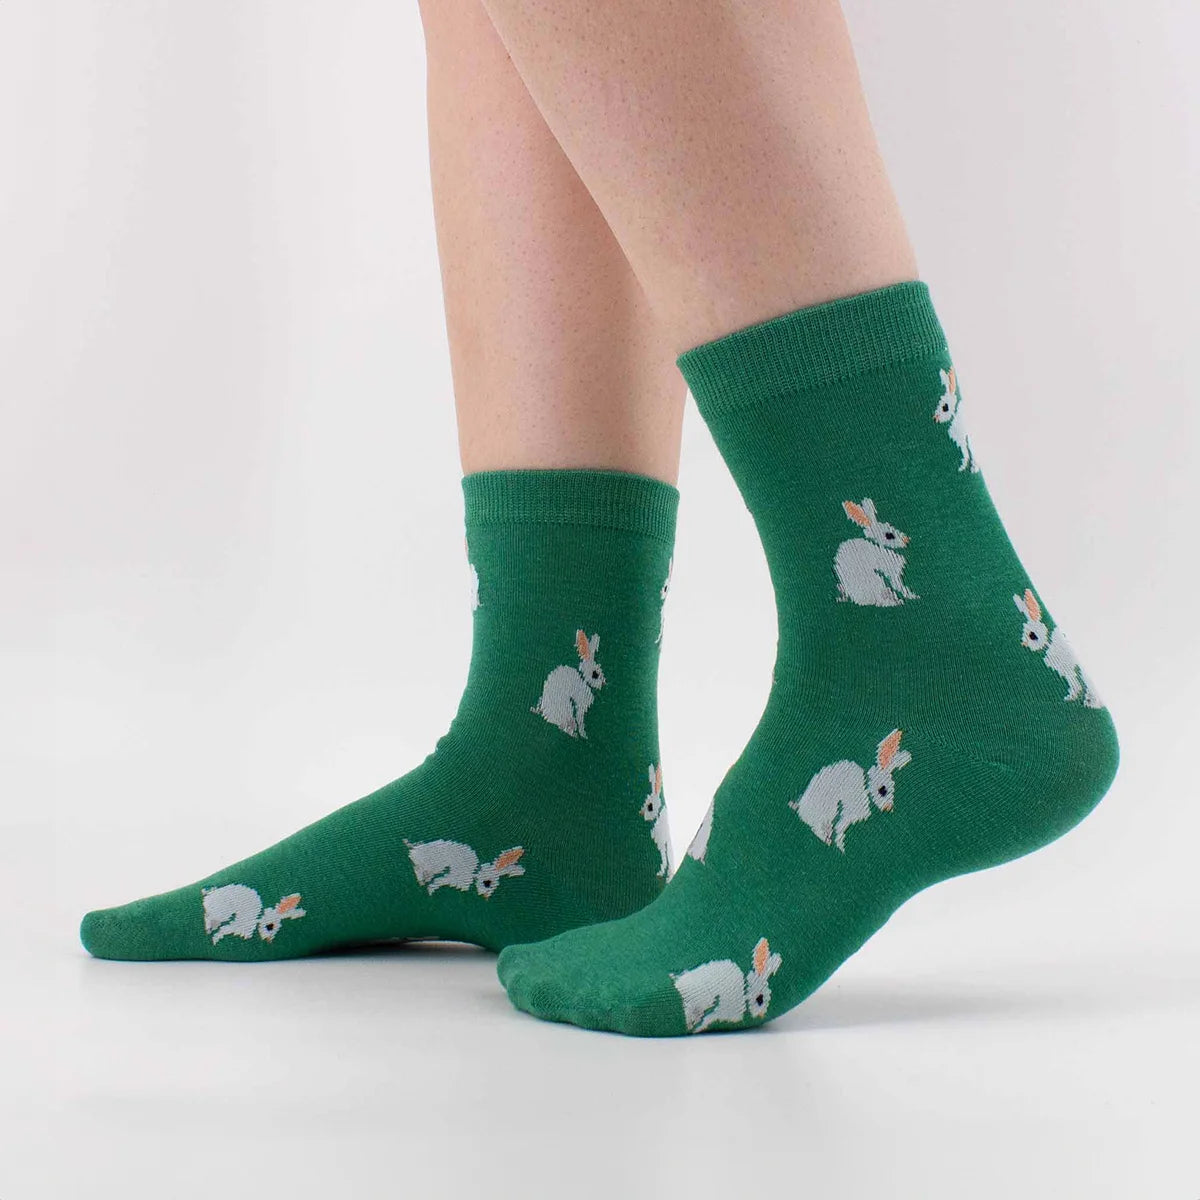 Chaussettes vert longues en coton avec pleins de lapin brodés dessus | Chaussettes confortables et élégantes | Idéales pour tous | Disponibles en plusieurs couleurs